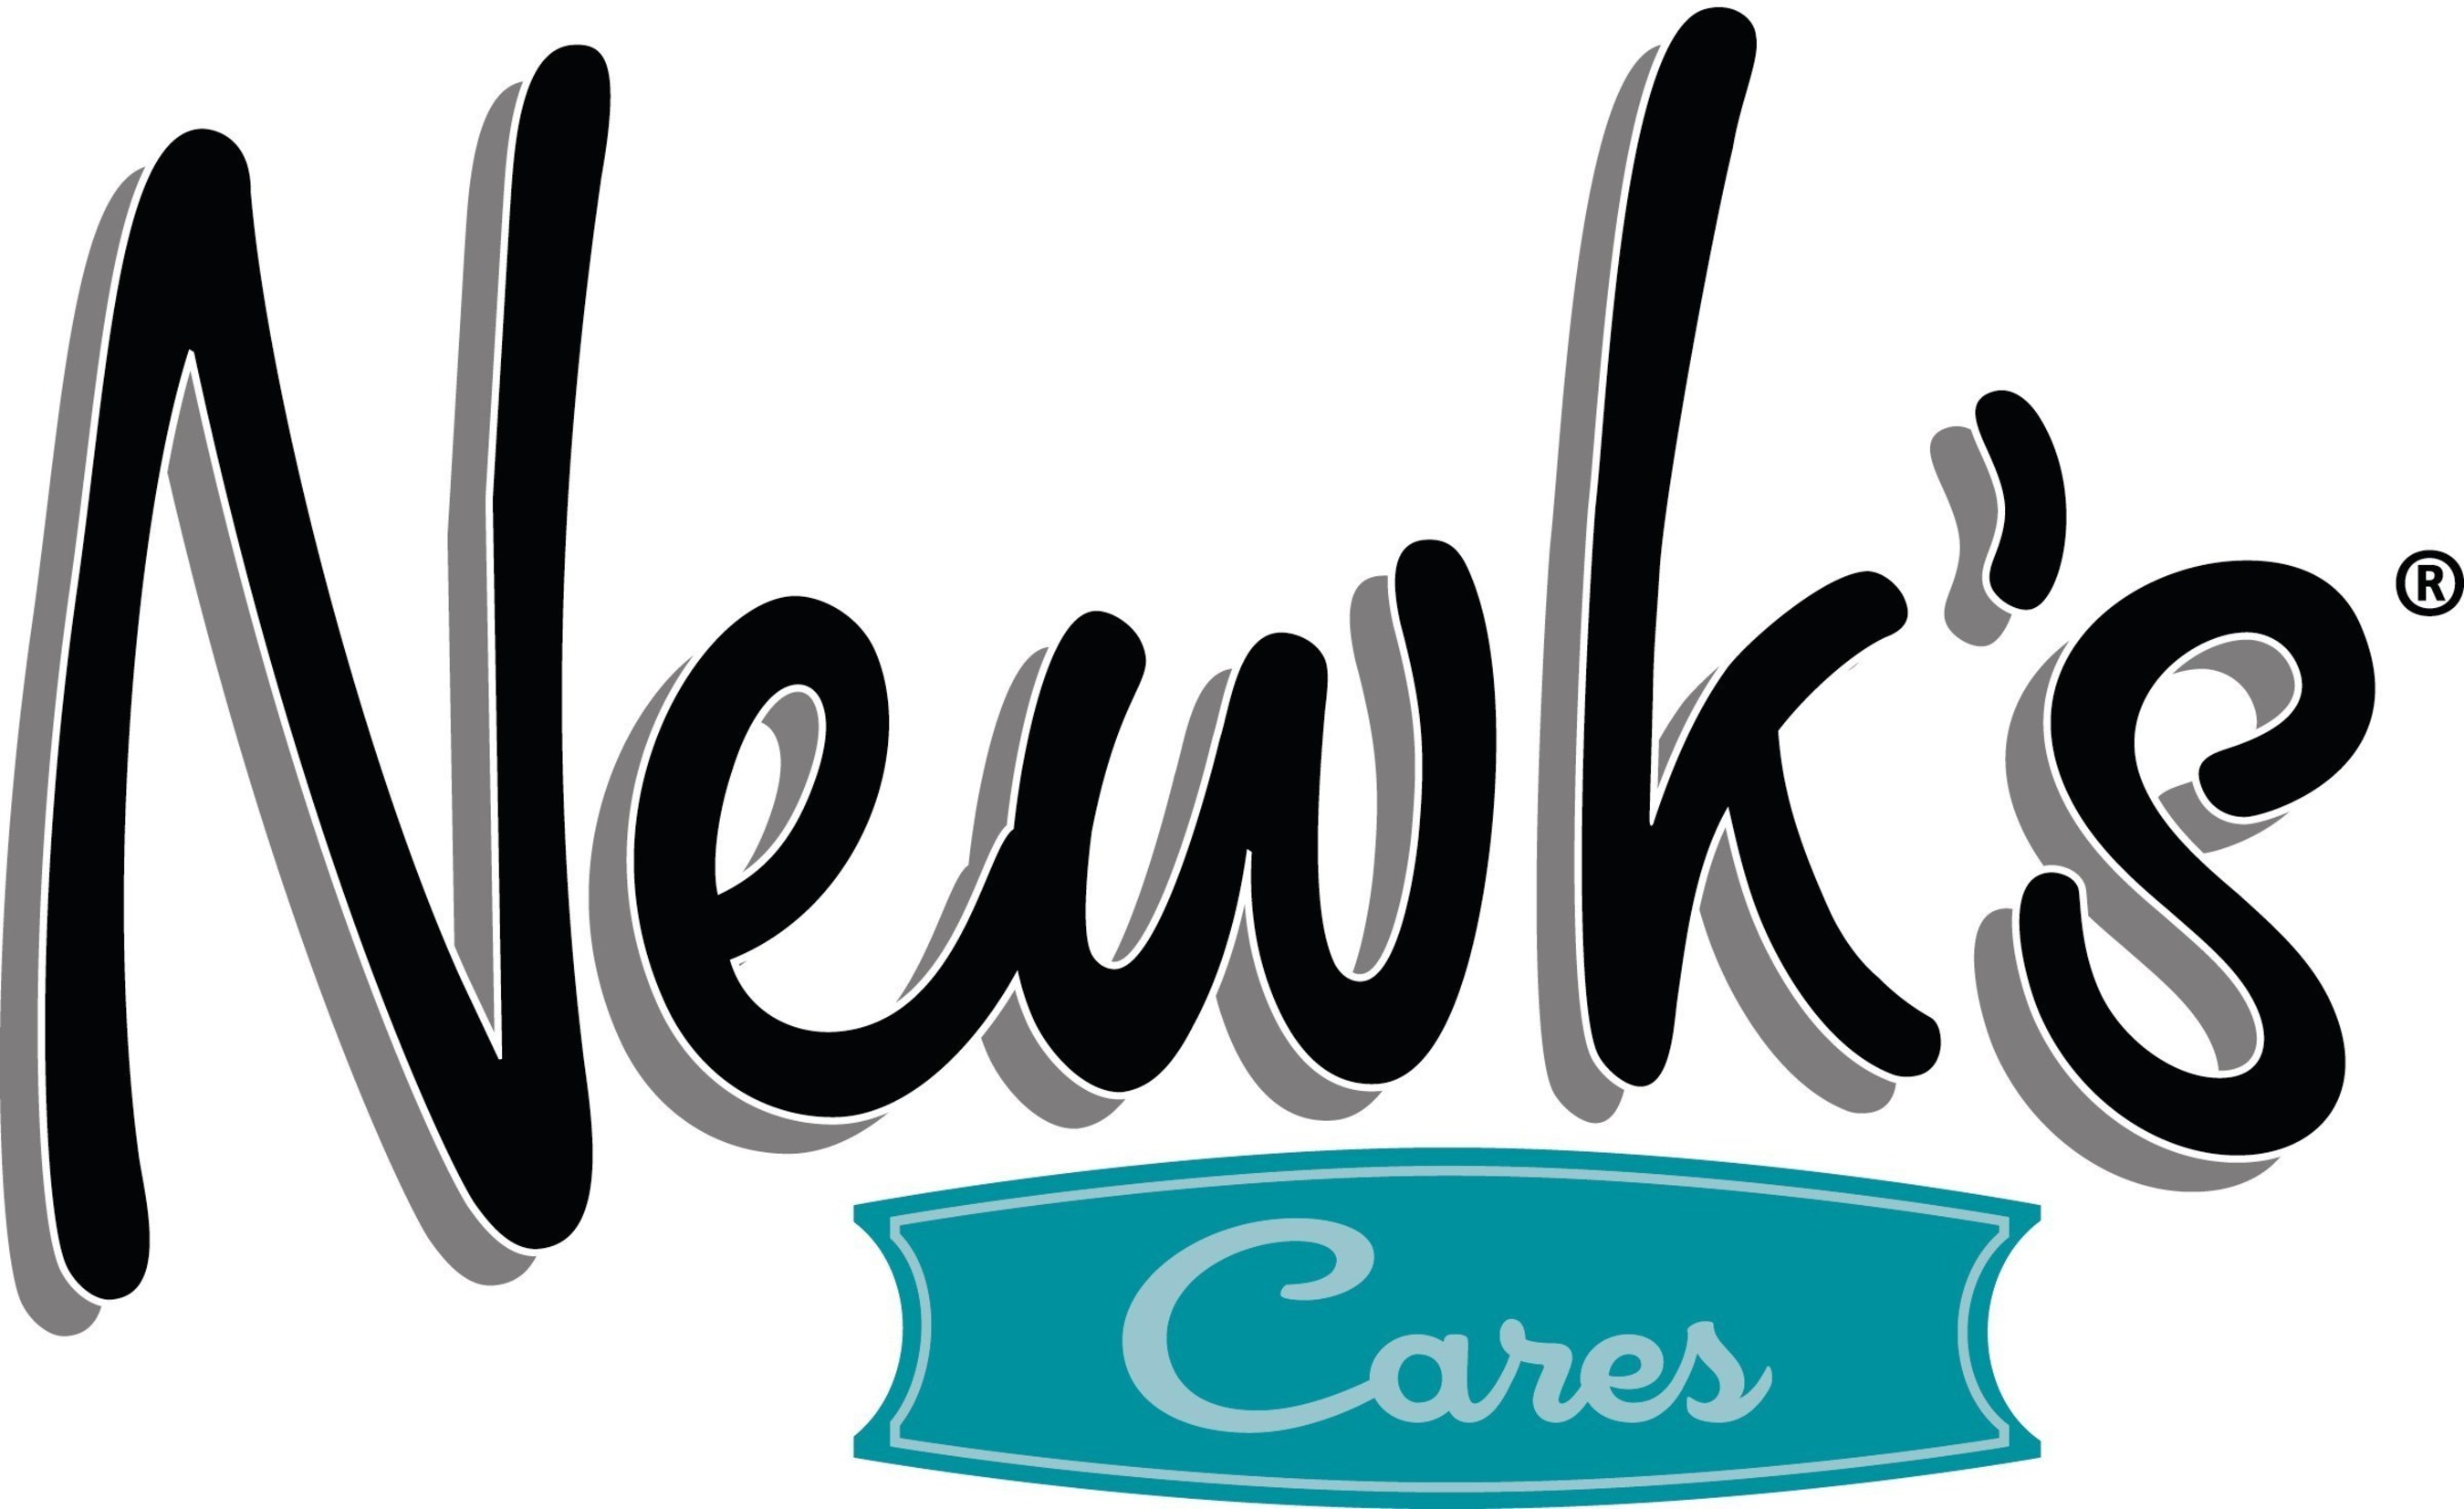 Newk's Cares